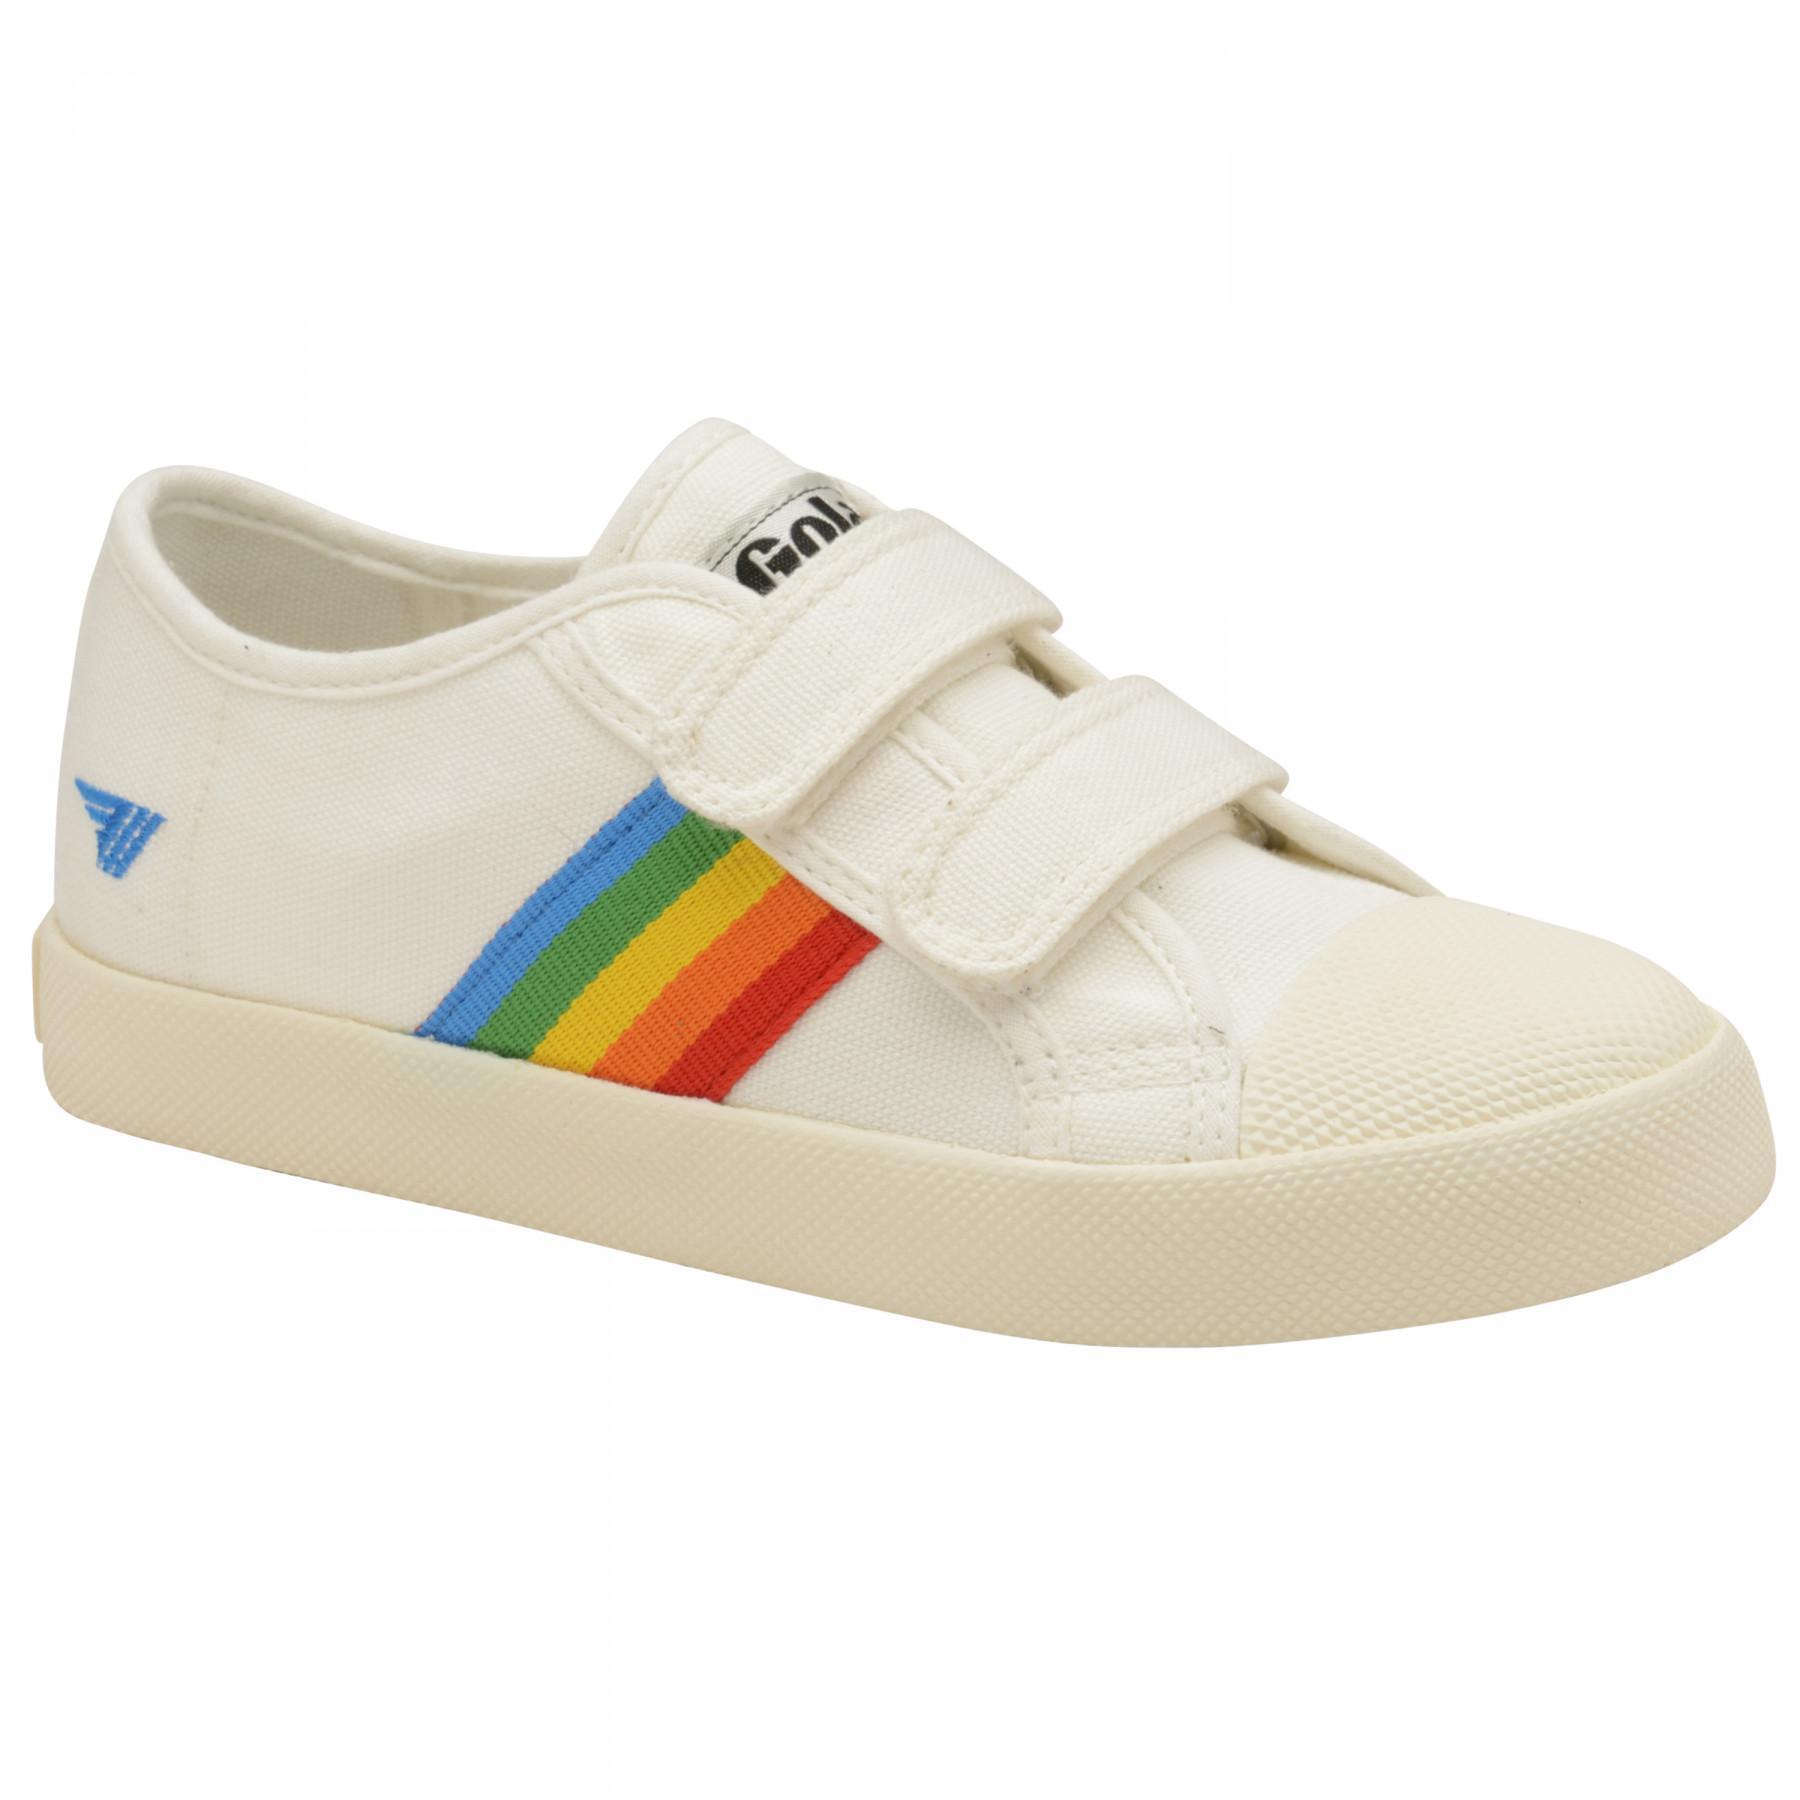 Zapatillas niños Gola Coaster Rainbow Velcro